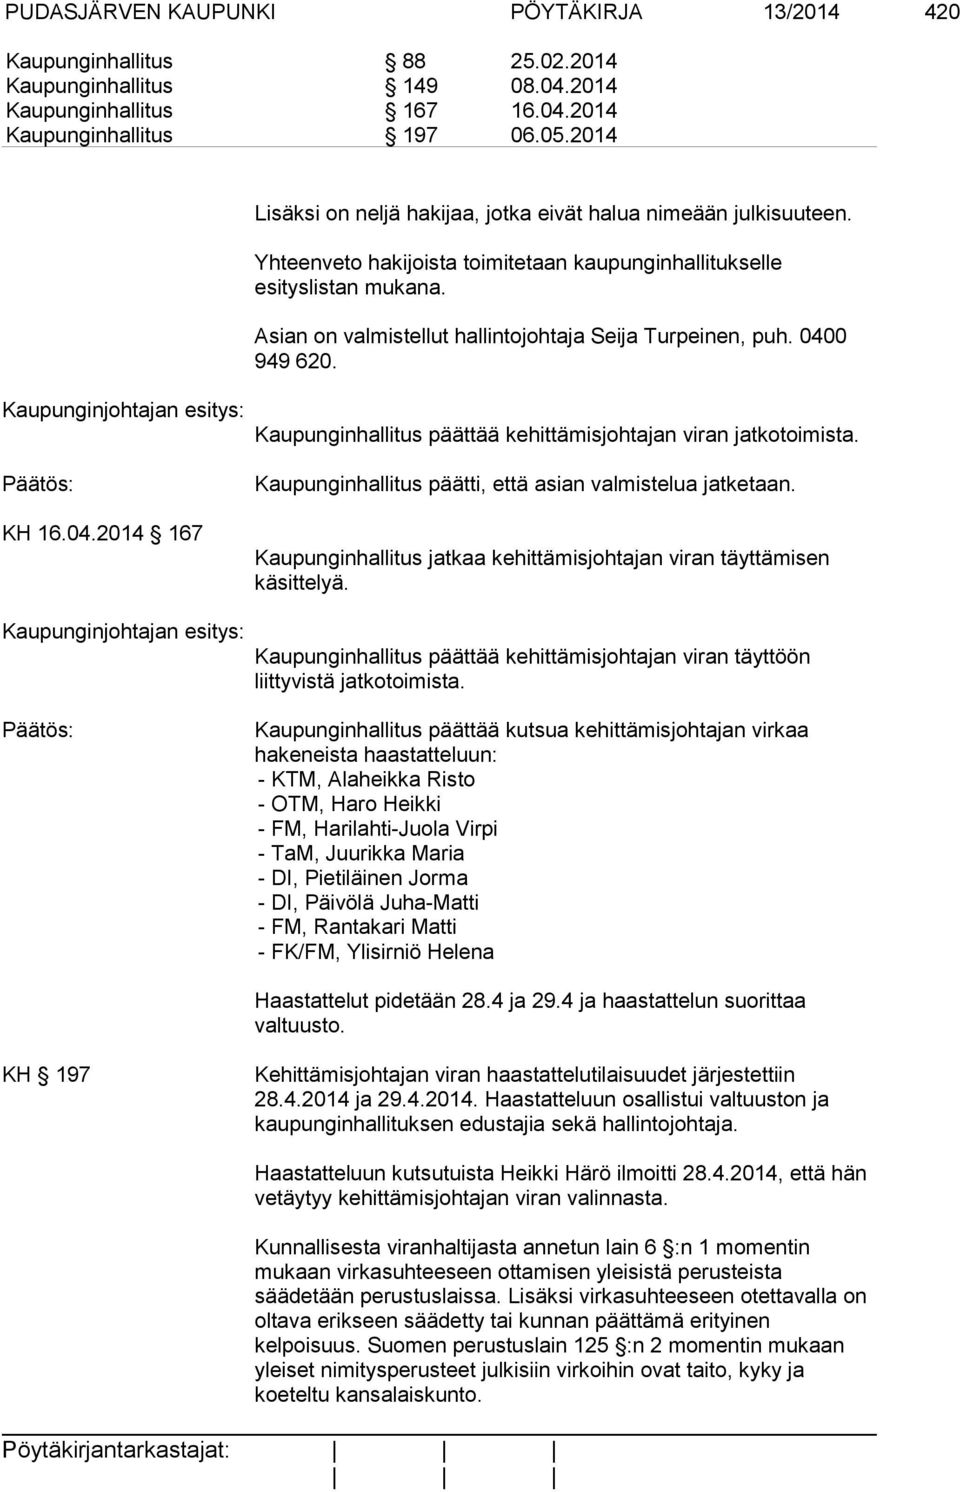 Asian on valmistellut hallintojohtaja Seija Turpeinen, puh. 0400 949 620. KH 16.04.2014 167 Kaupunginhallitus päättää kehittämisjohtajan viran jatkotoimista.